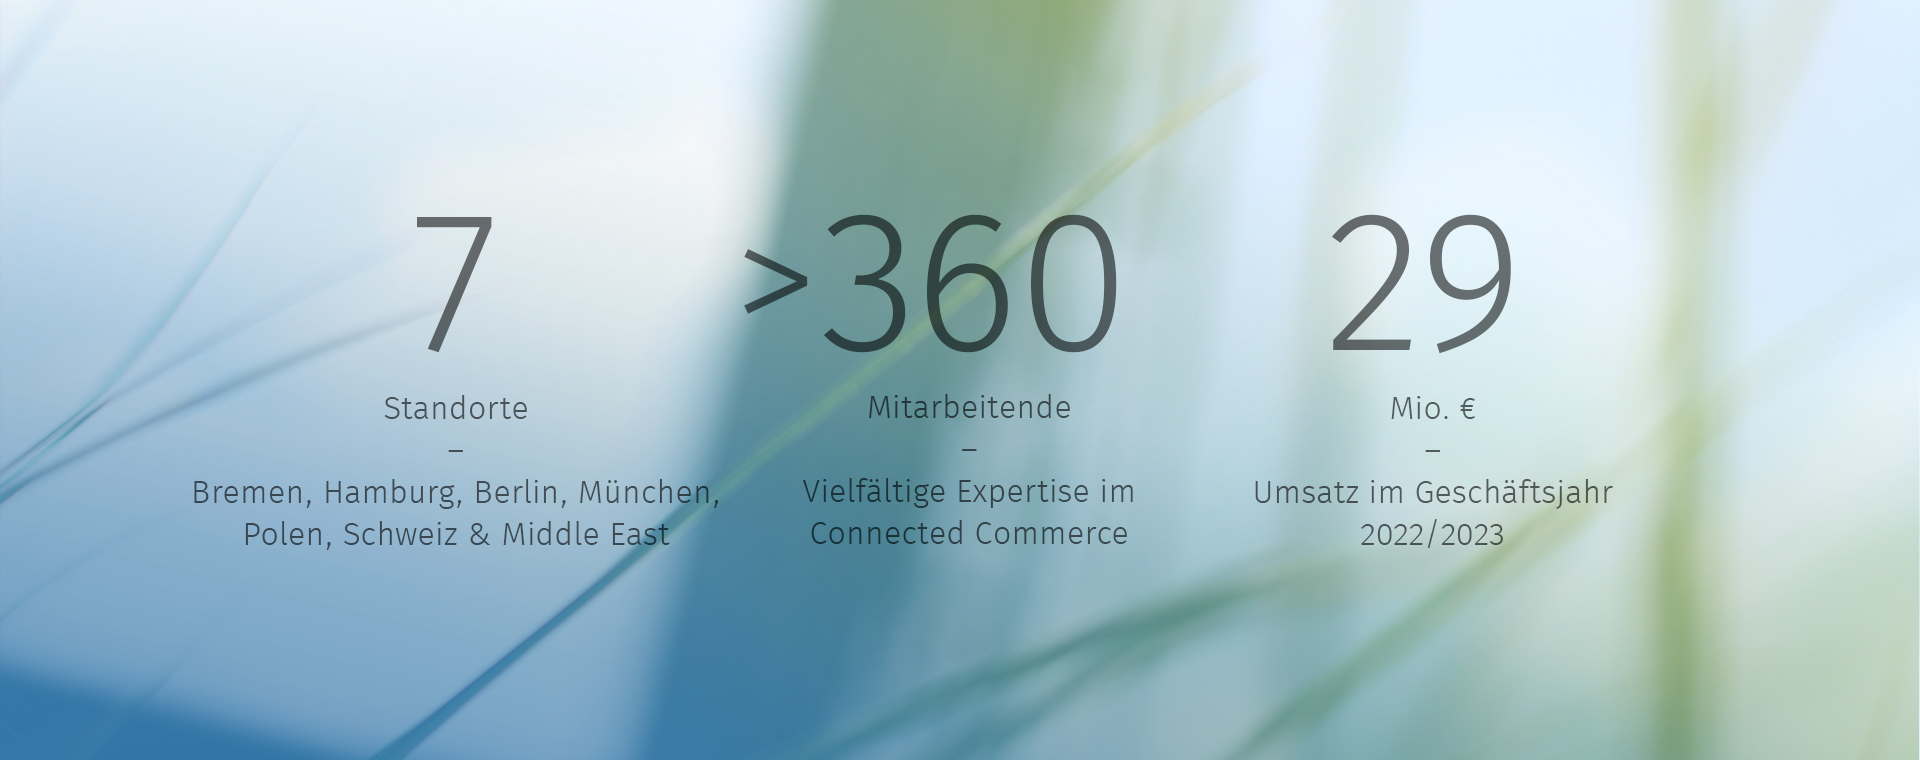 Das Bild zeigt drei Unternehmenskennzahlen der hmmh. 6 Standorte: Bremen, Hamburg, Berlin, München, Trivandrum und Wroclaw. Mitarbeitende: Mehr als 340 und 26 Millionen Euro Umsatz im Geschäftsjahr 2021/2022.